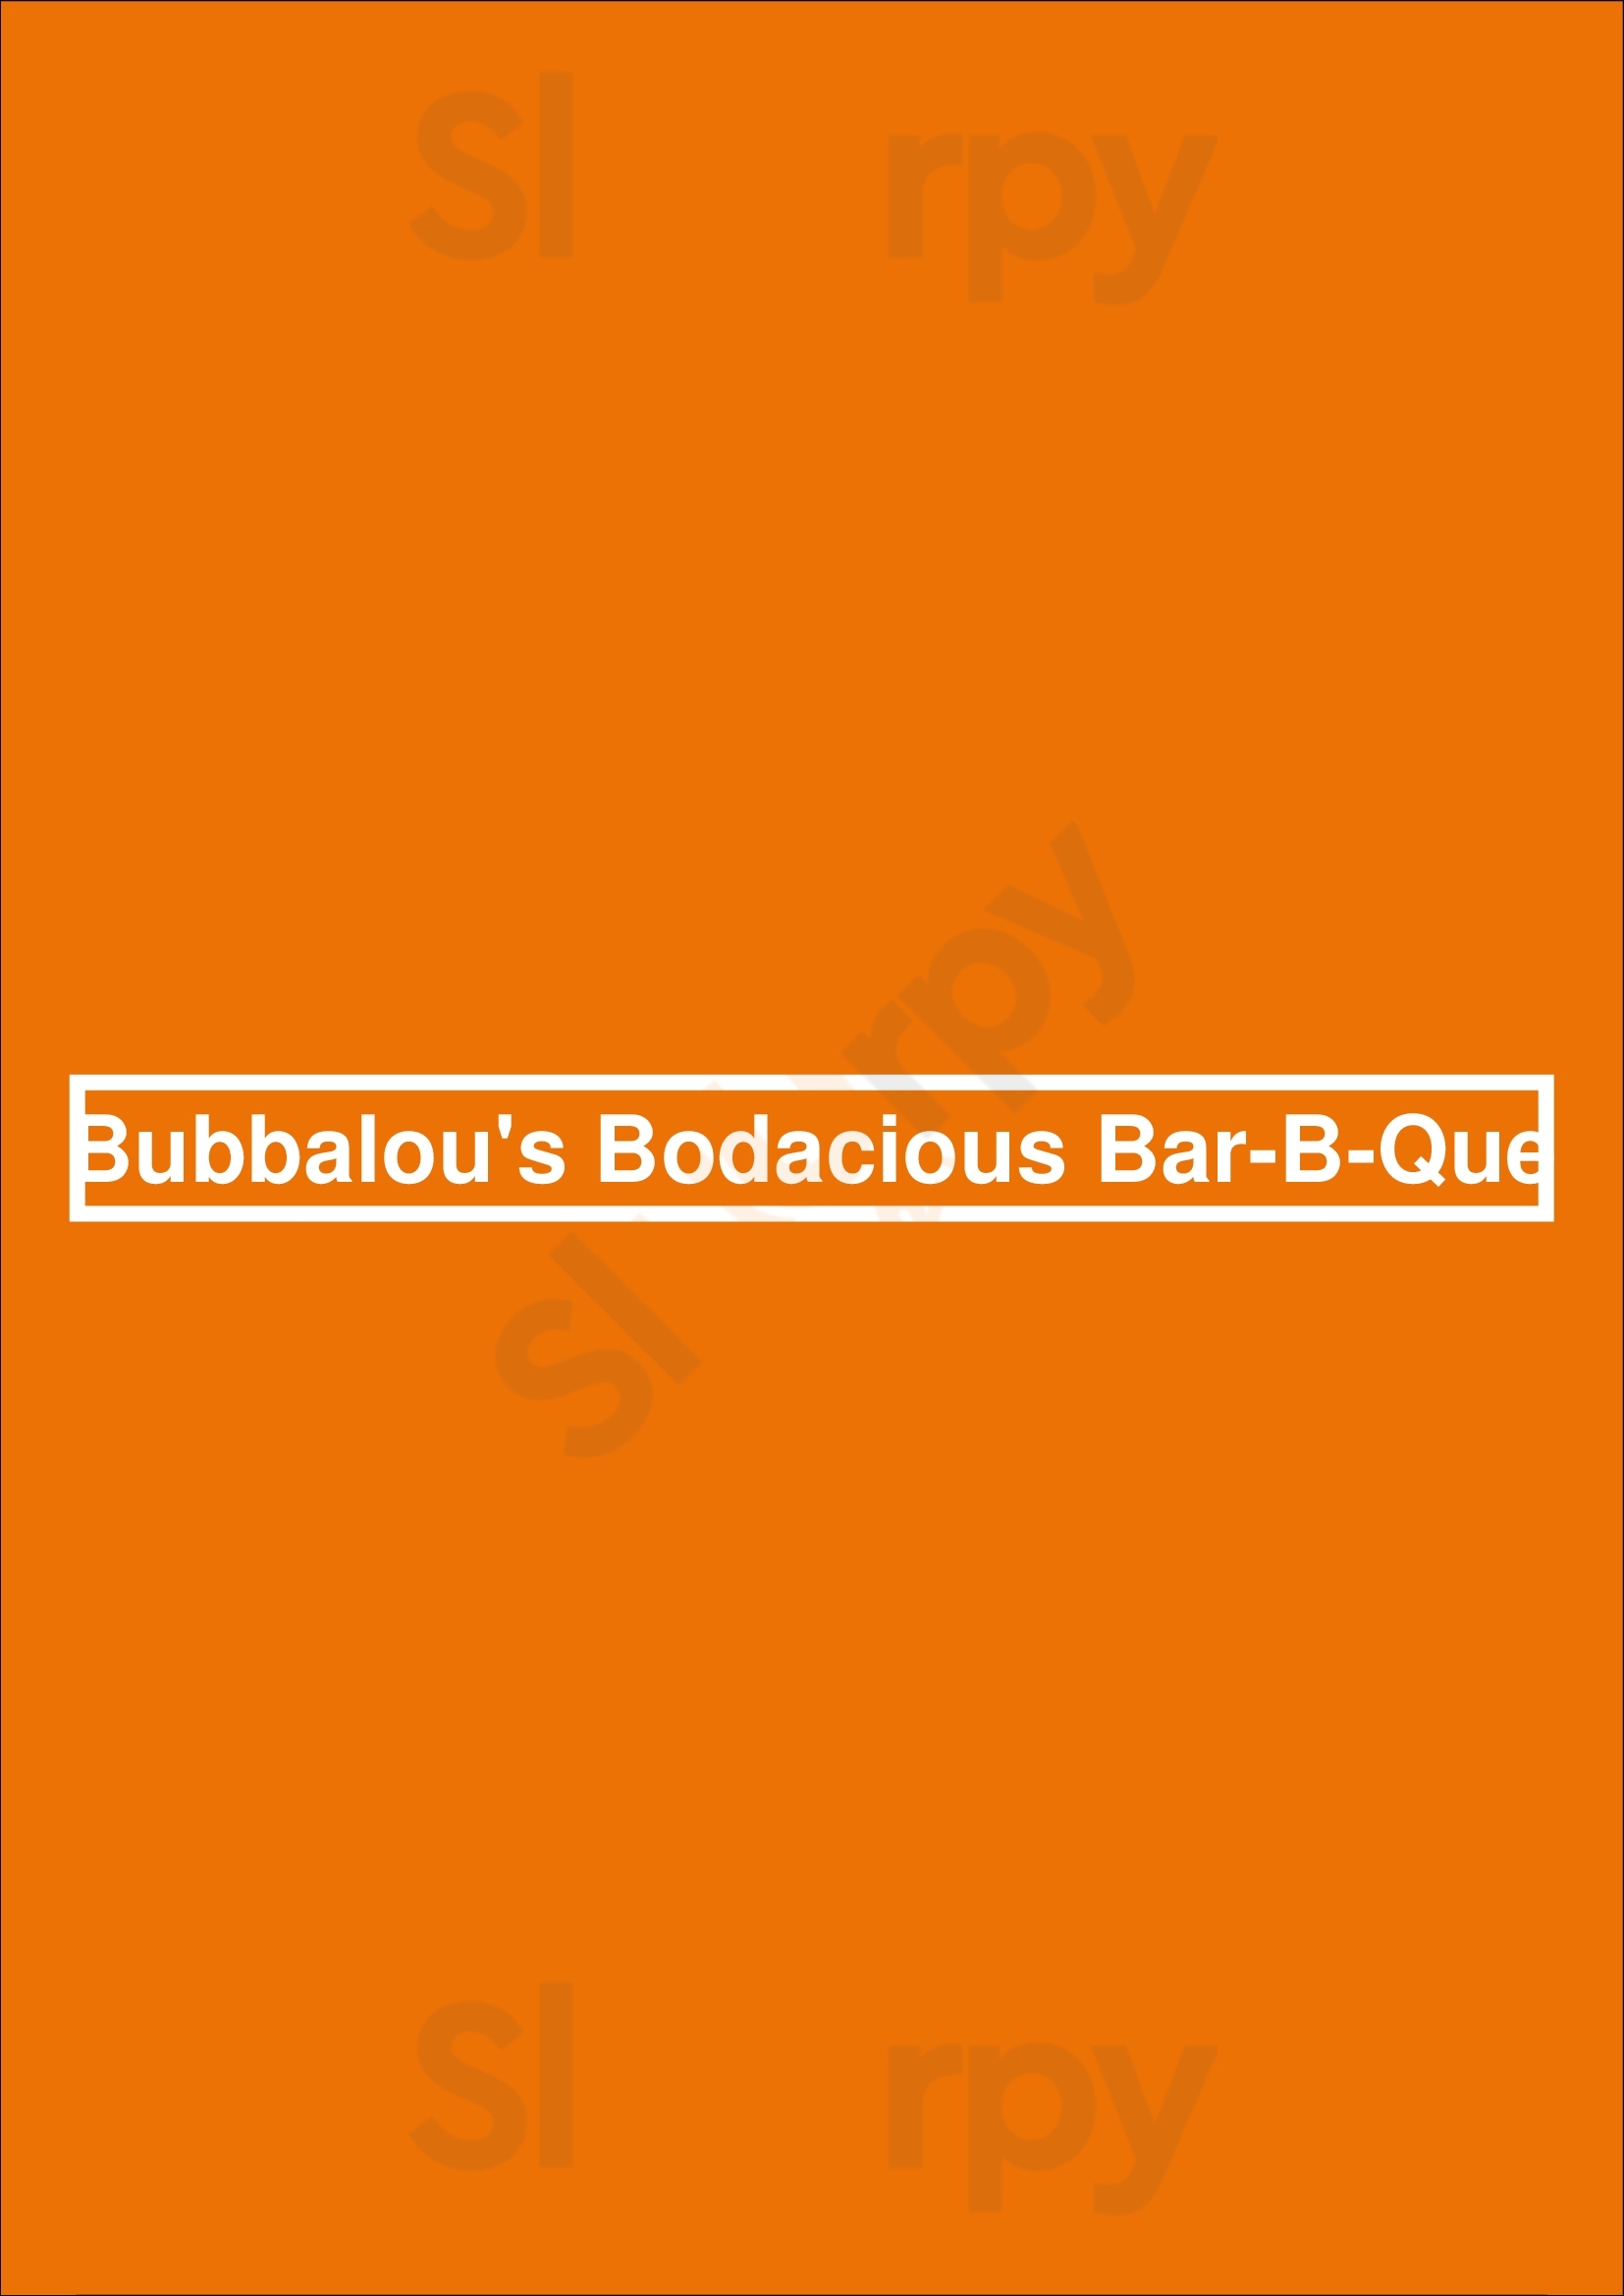 Bubbalou's Bodacious Bar-b-que Orlando Menu - 1